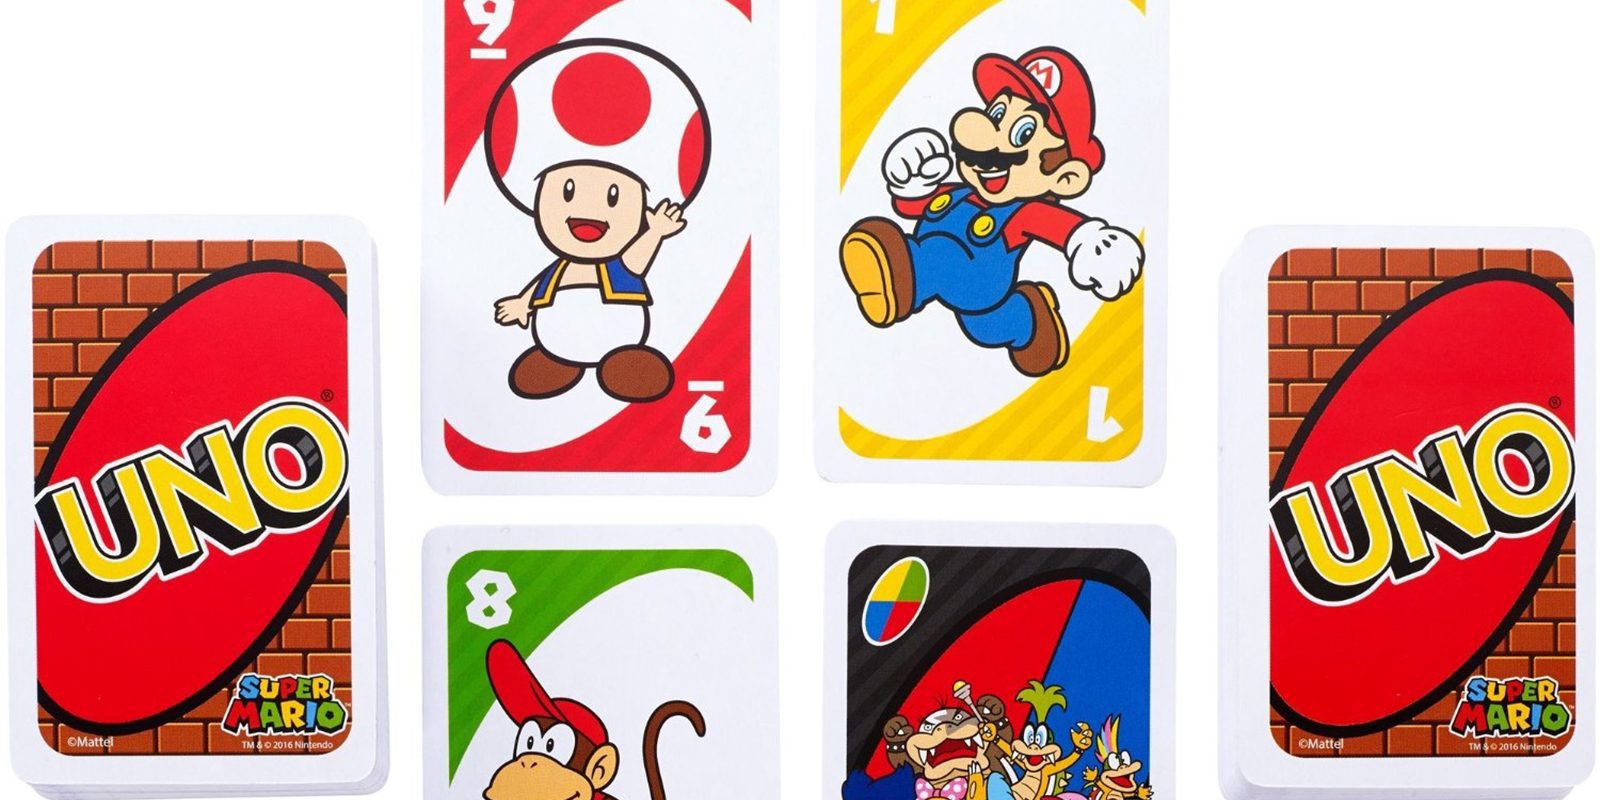 Las cartas Uno tendrán una edición de 'Super Mario' en Japón